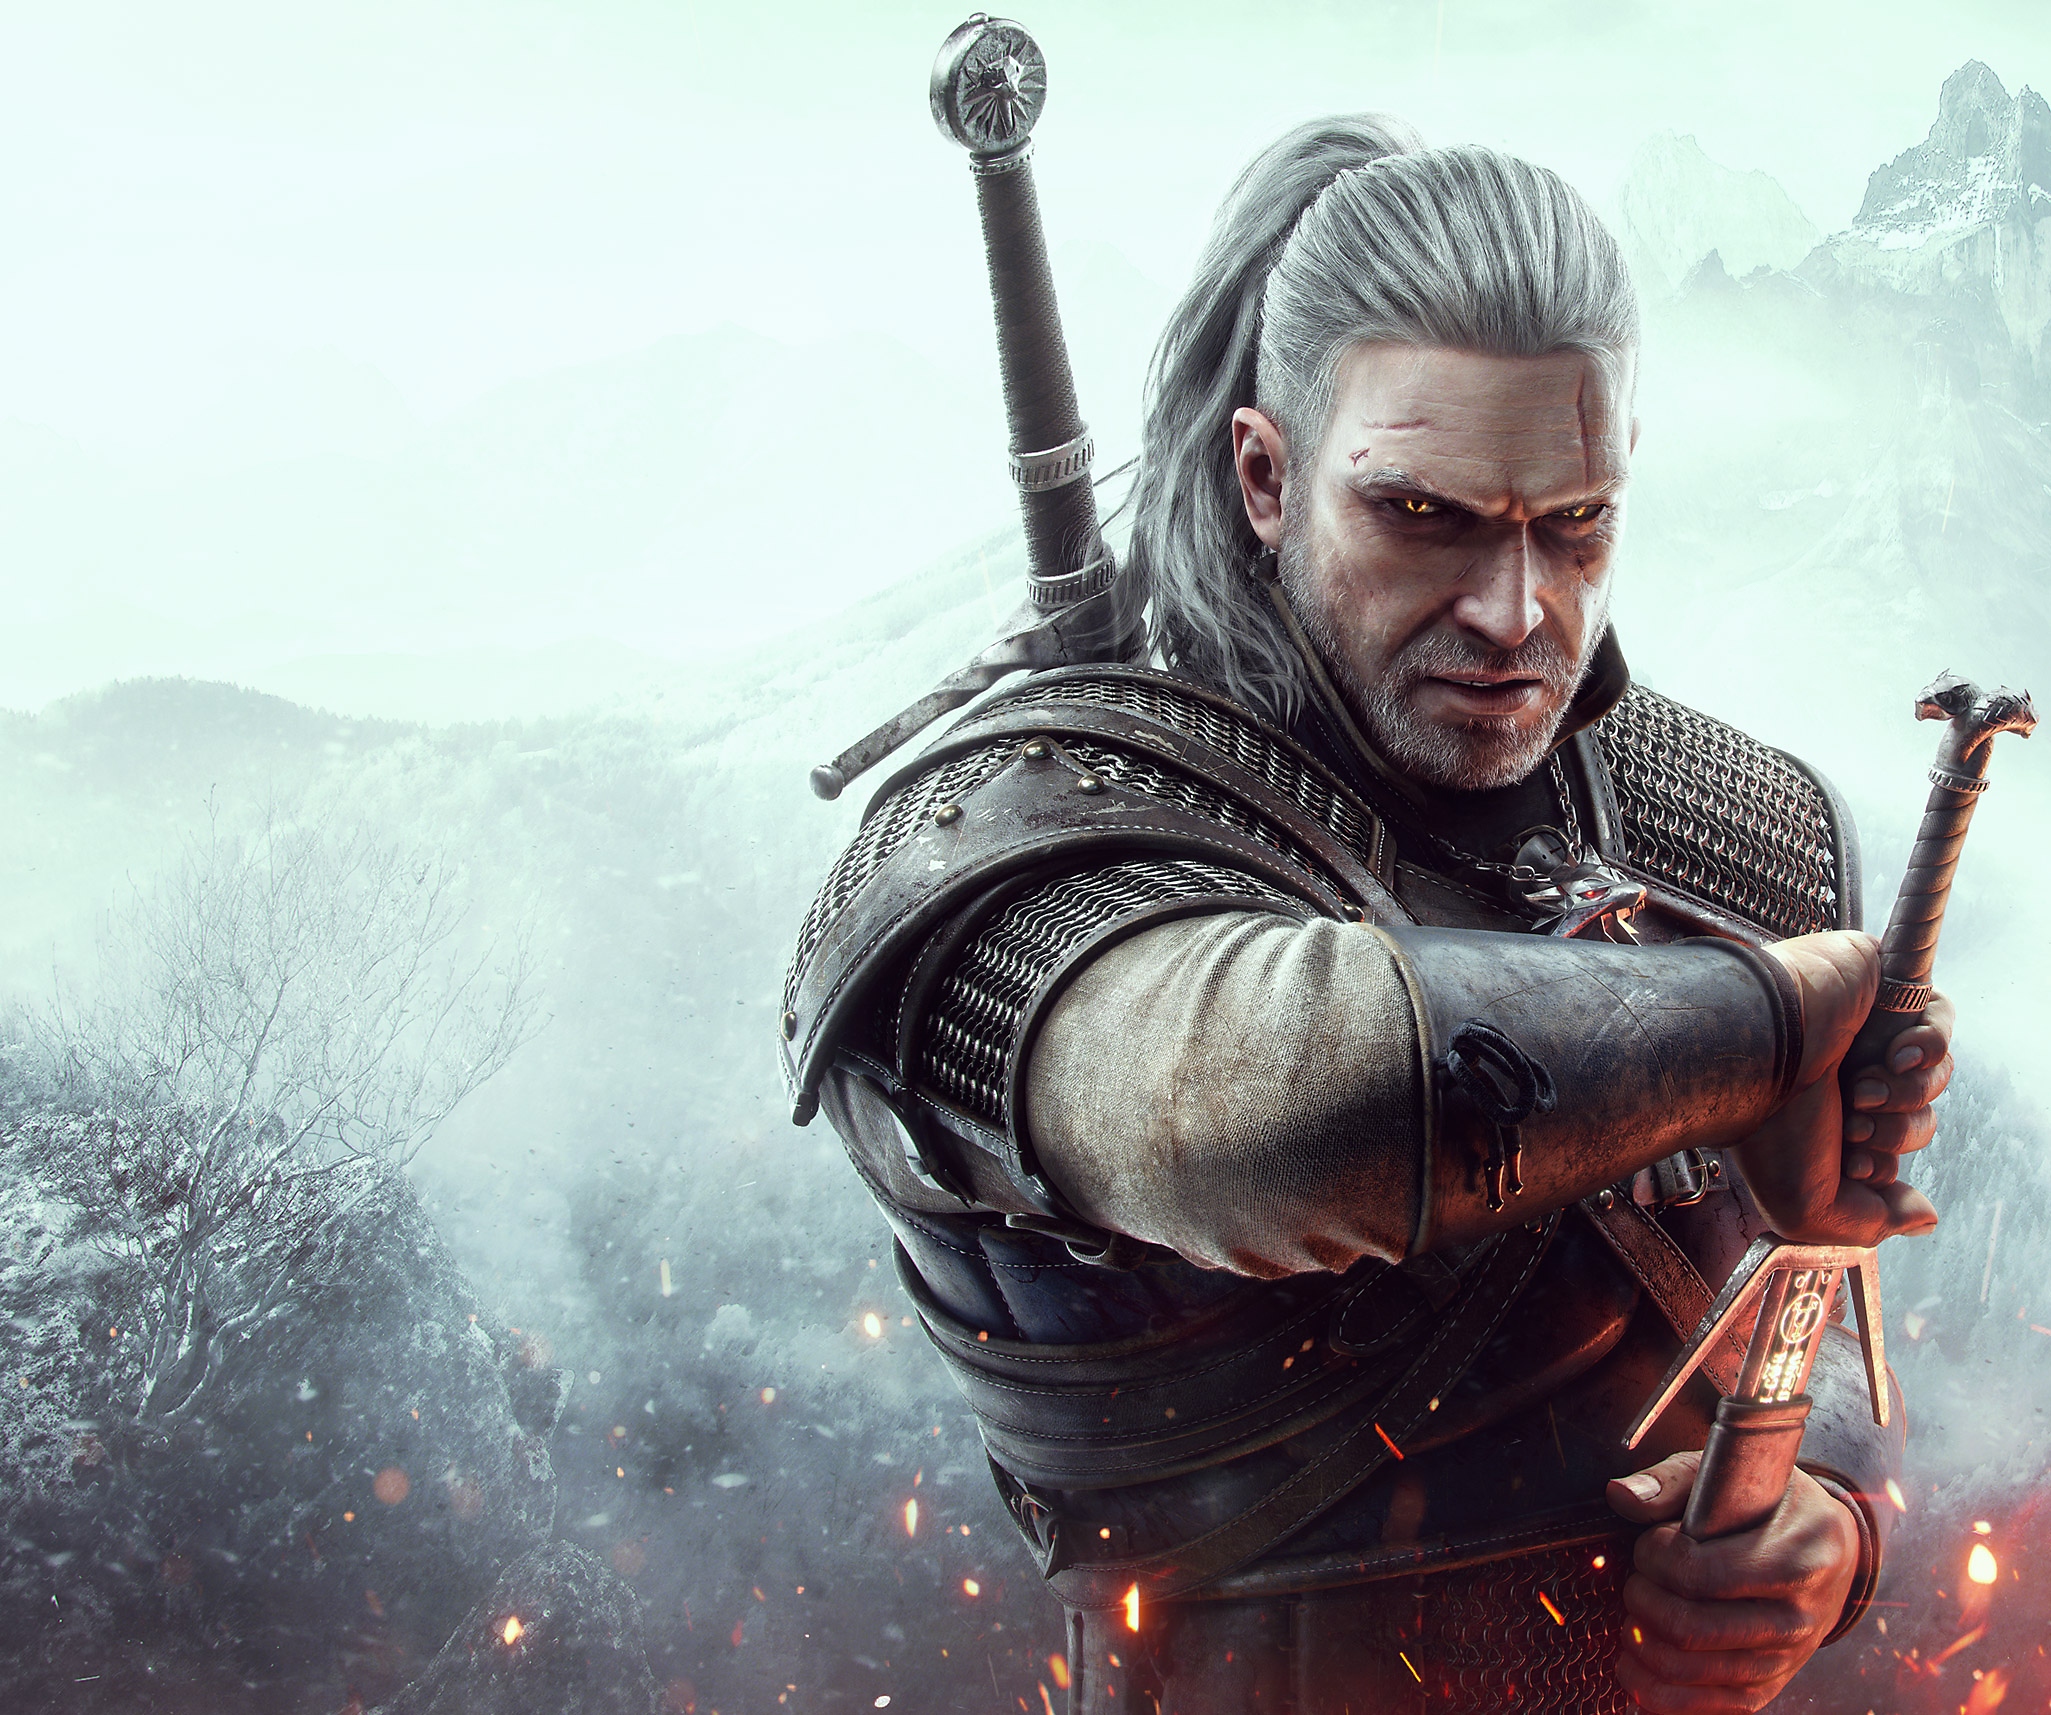 The Witcher 3 - Arte principal mostrando o protagonista Geralt de Rívia sacando sua espada